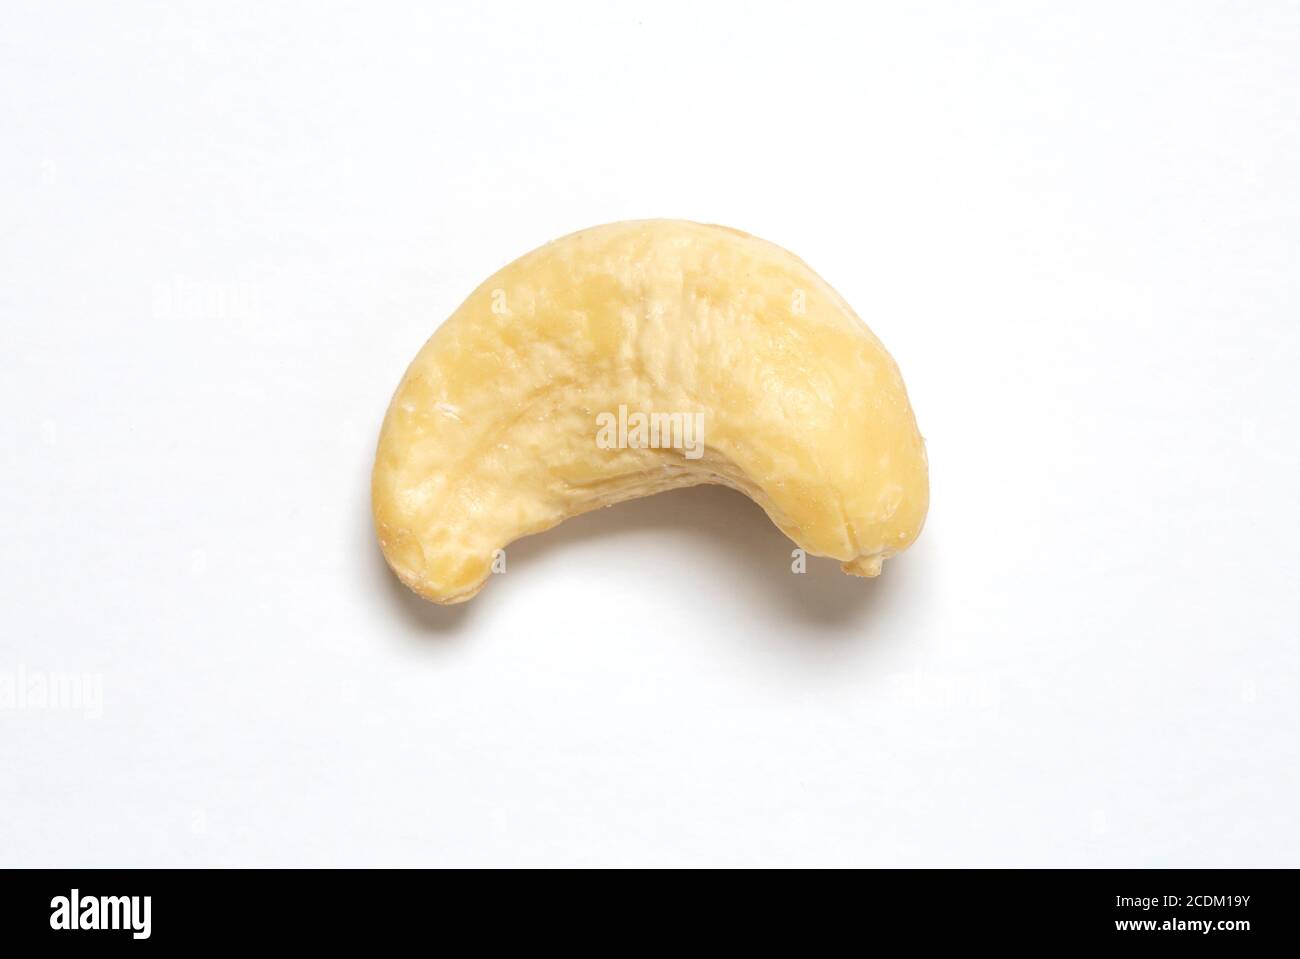 Cashew nut. Stock Photo